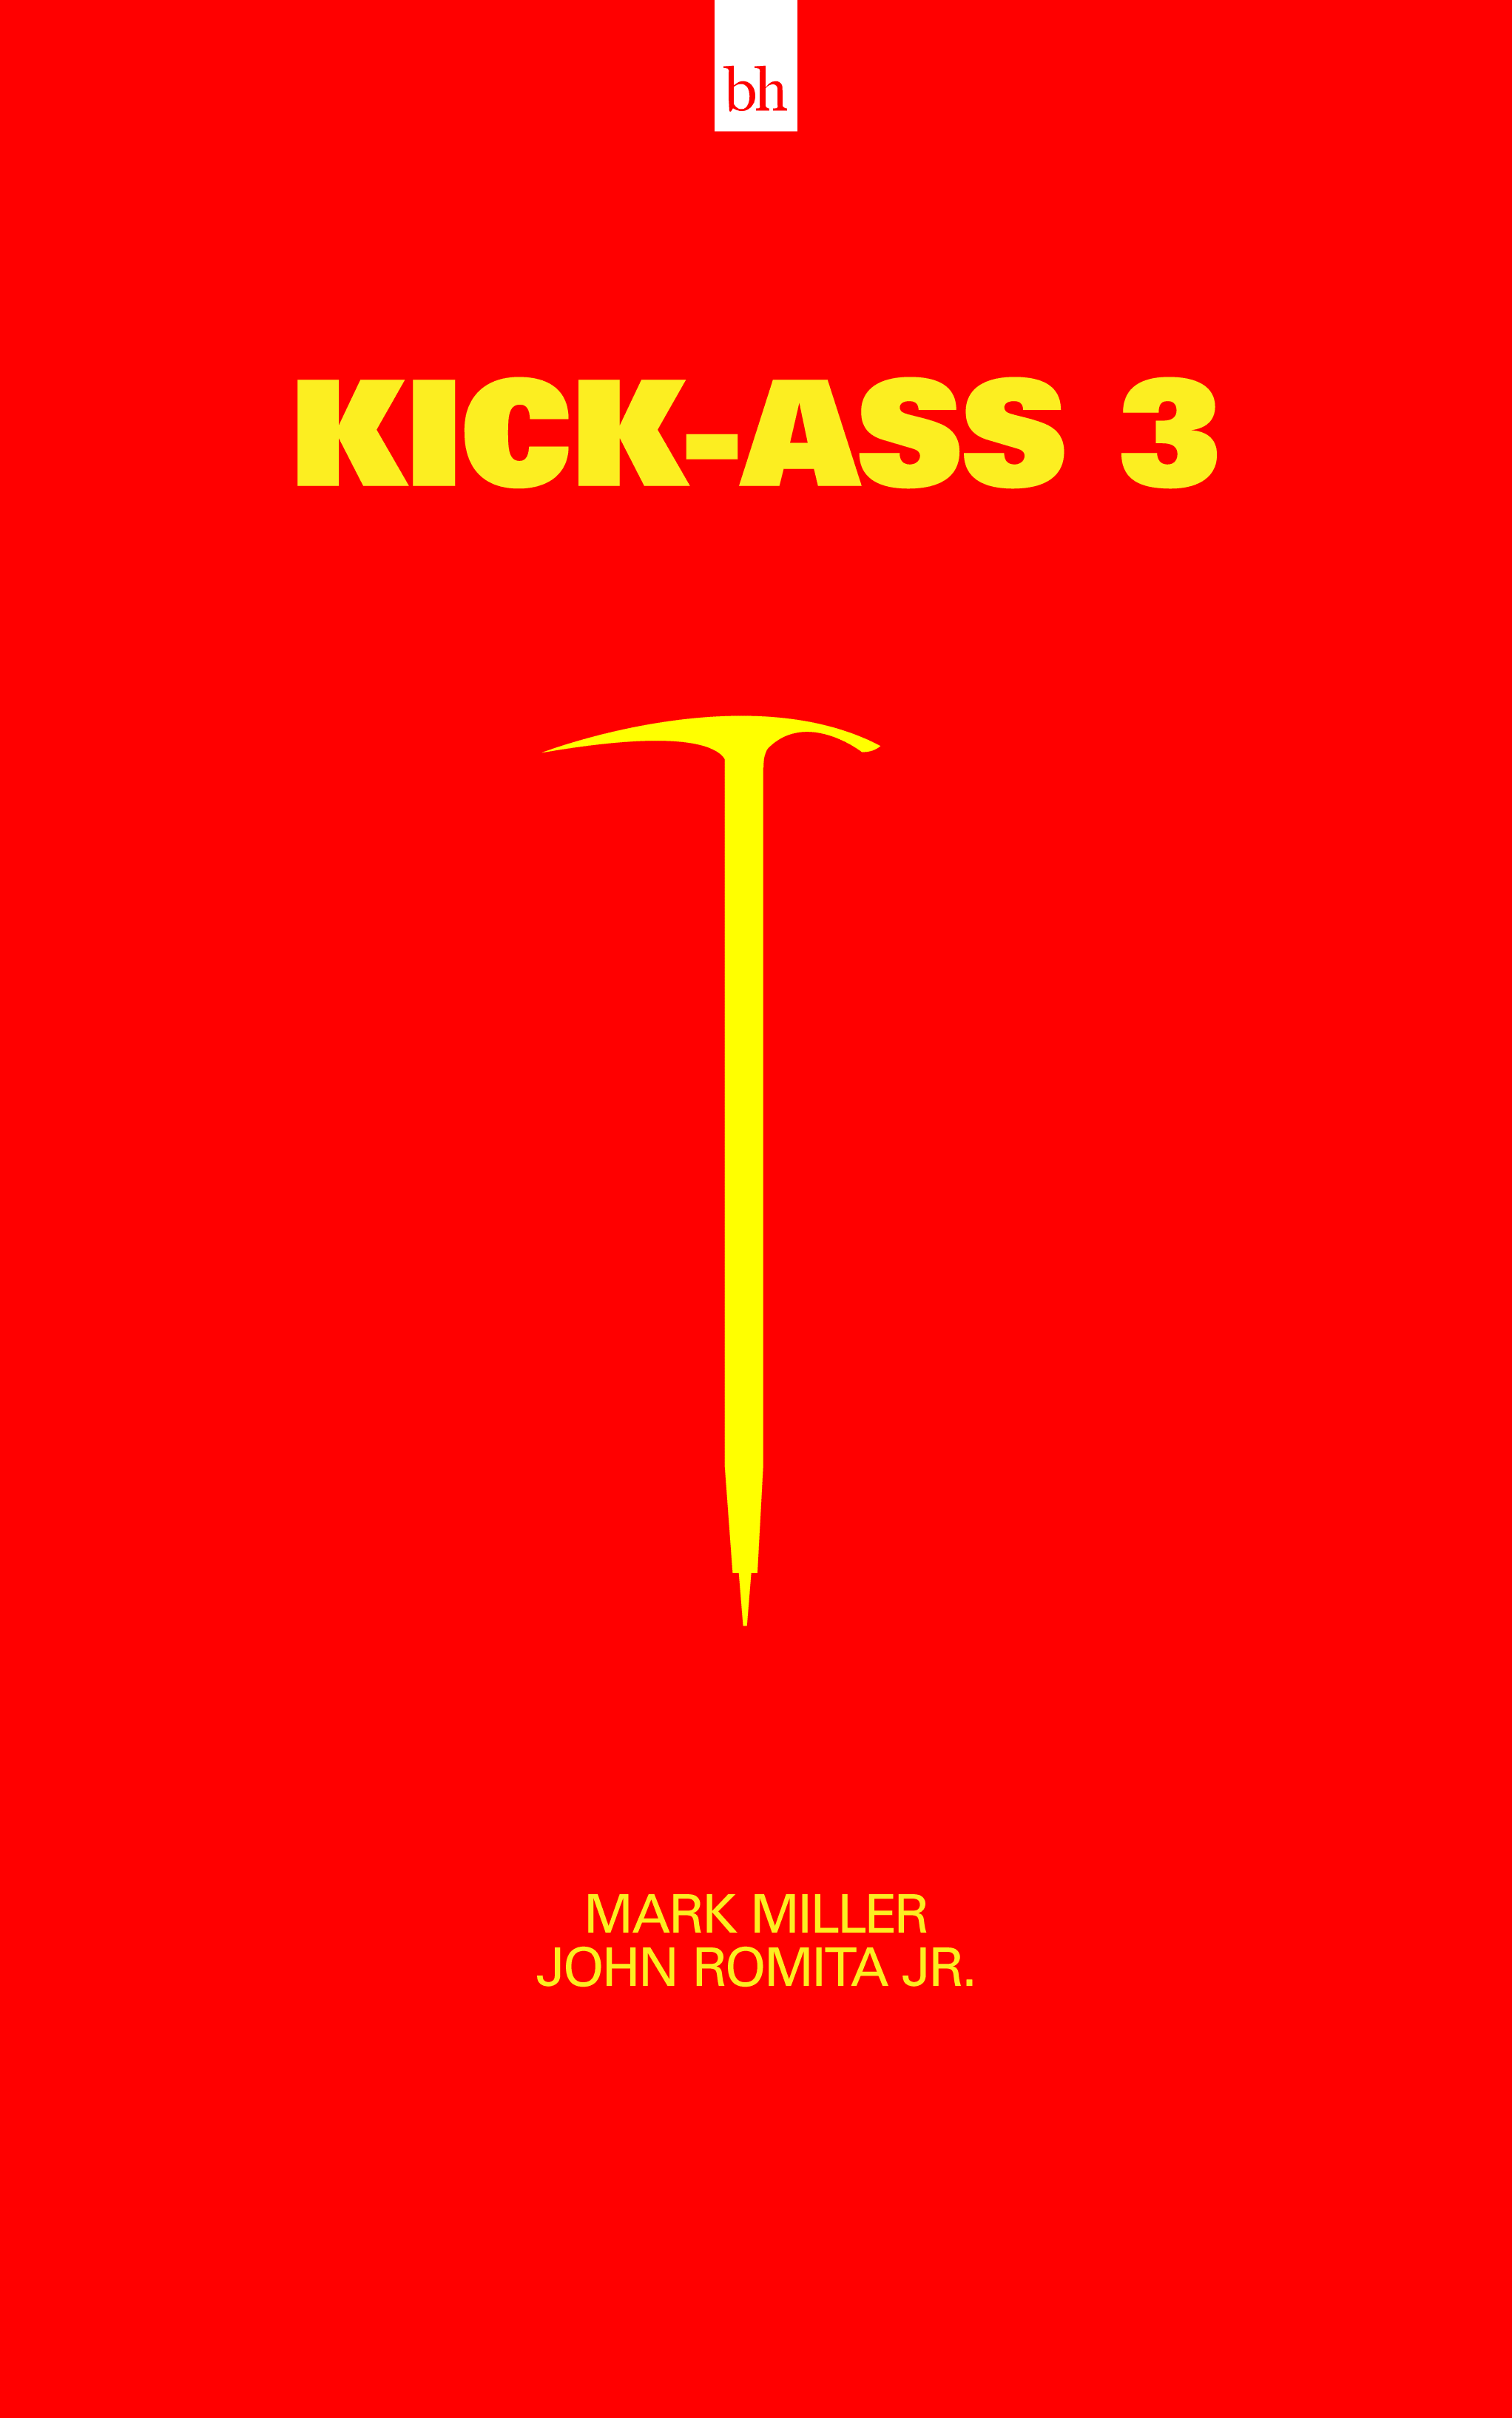 Kick-Ass 3 by Mark Millar